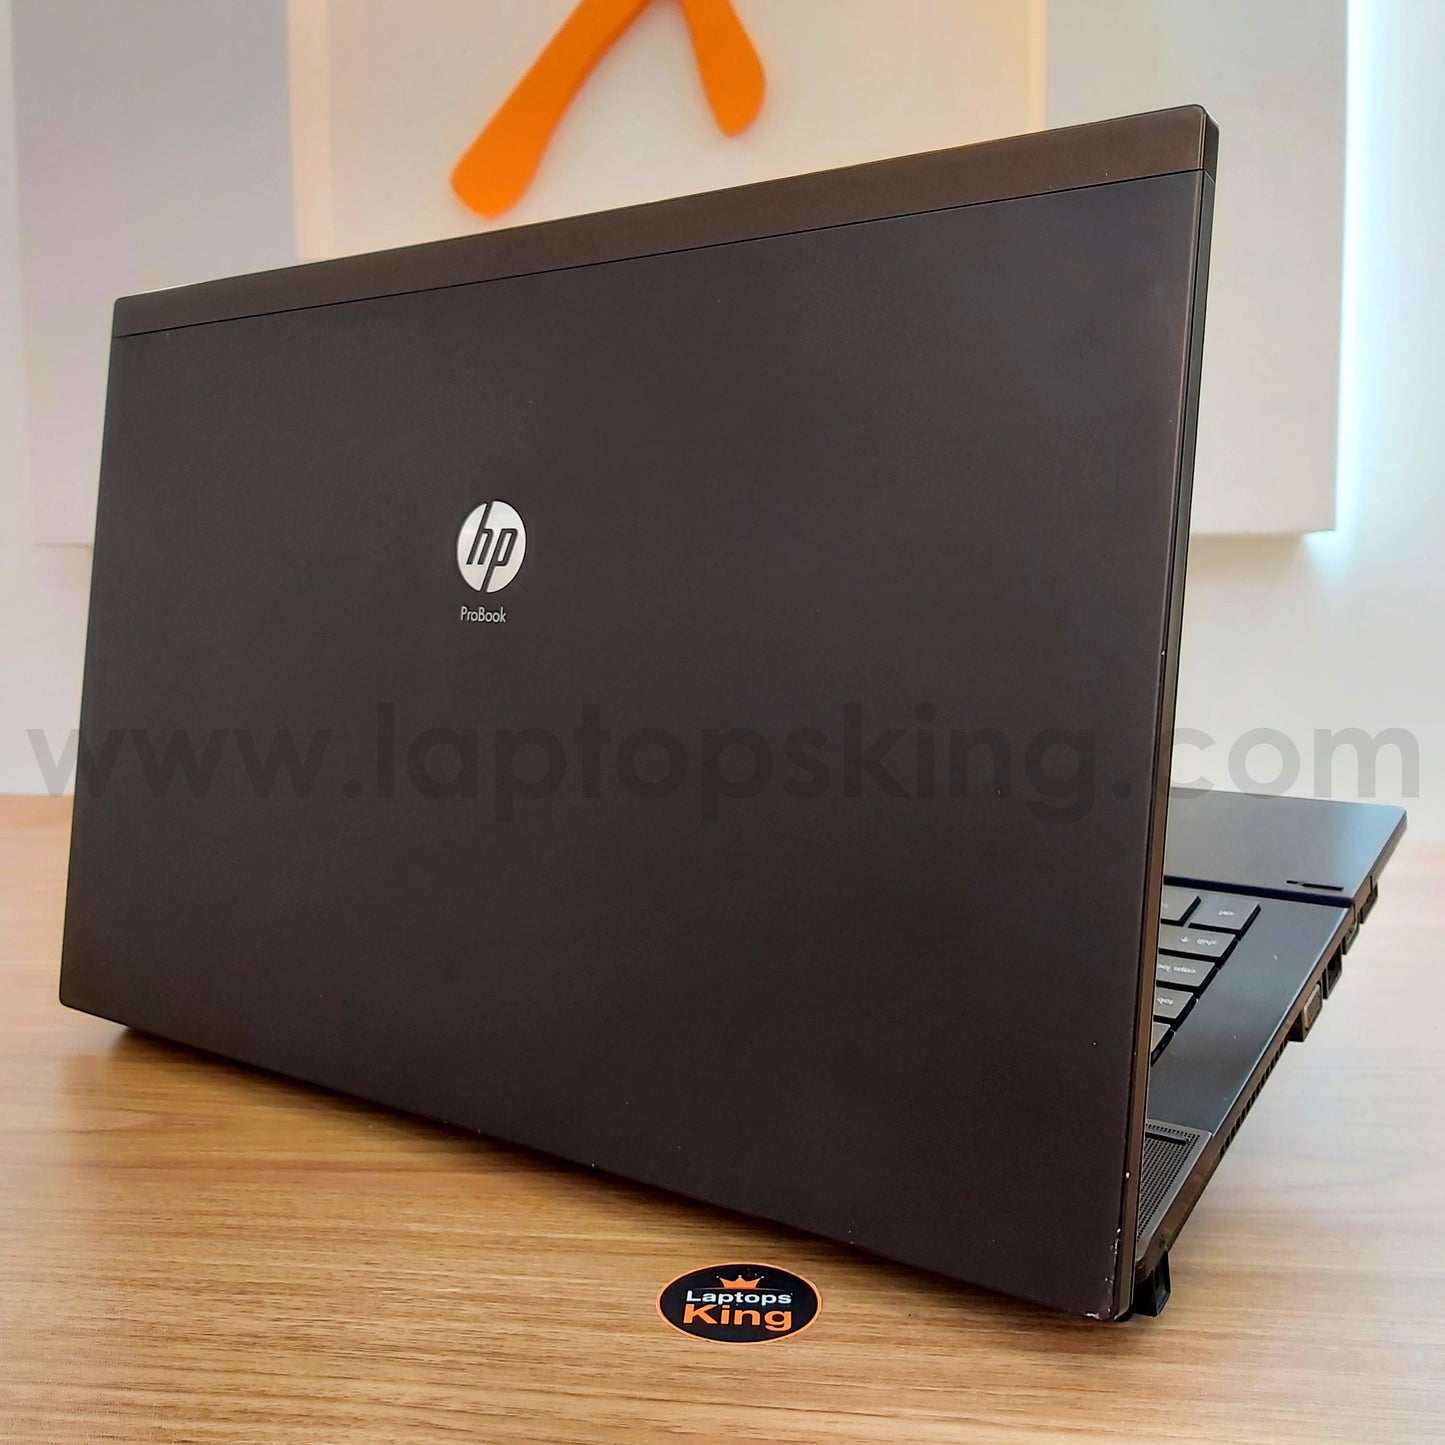 HP ProBook 4720S i7 Radeon 1GB Laptop (Used Very Clean)